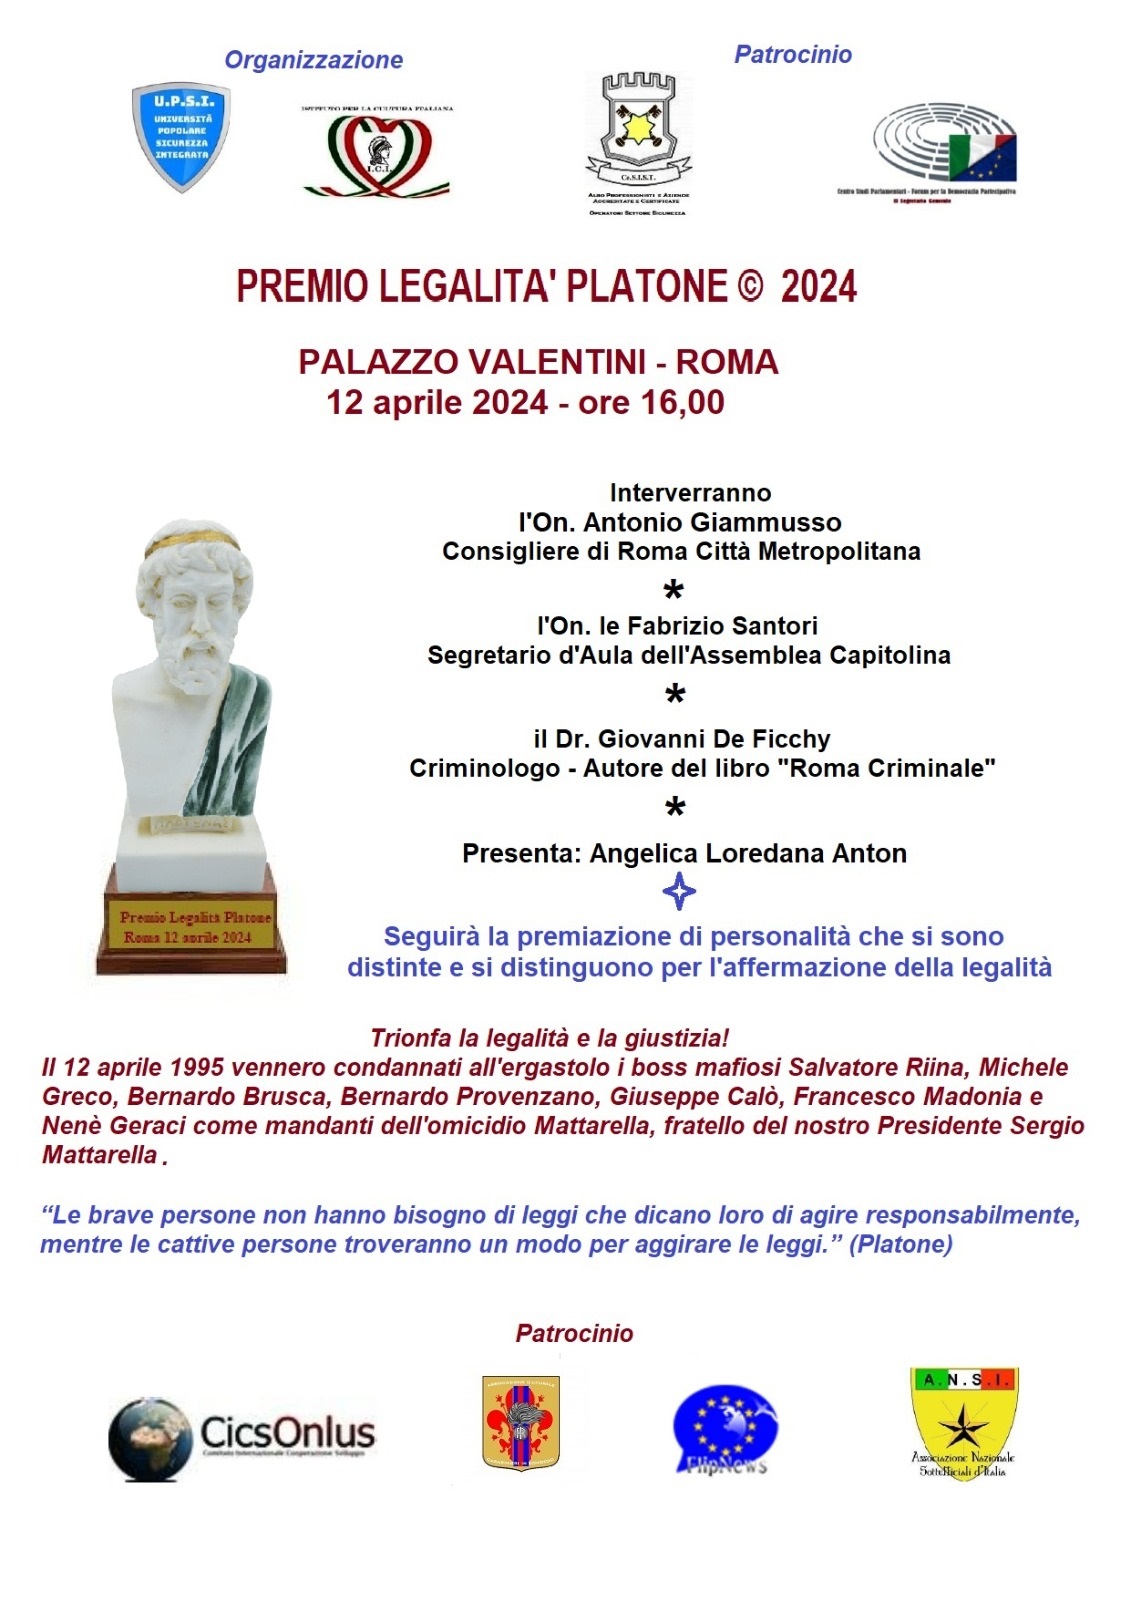 Premio Legalità Platone 2024 il 12 aprile alle 16,00 a Palazzo Valentini a Roma